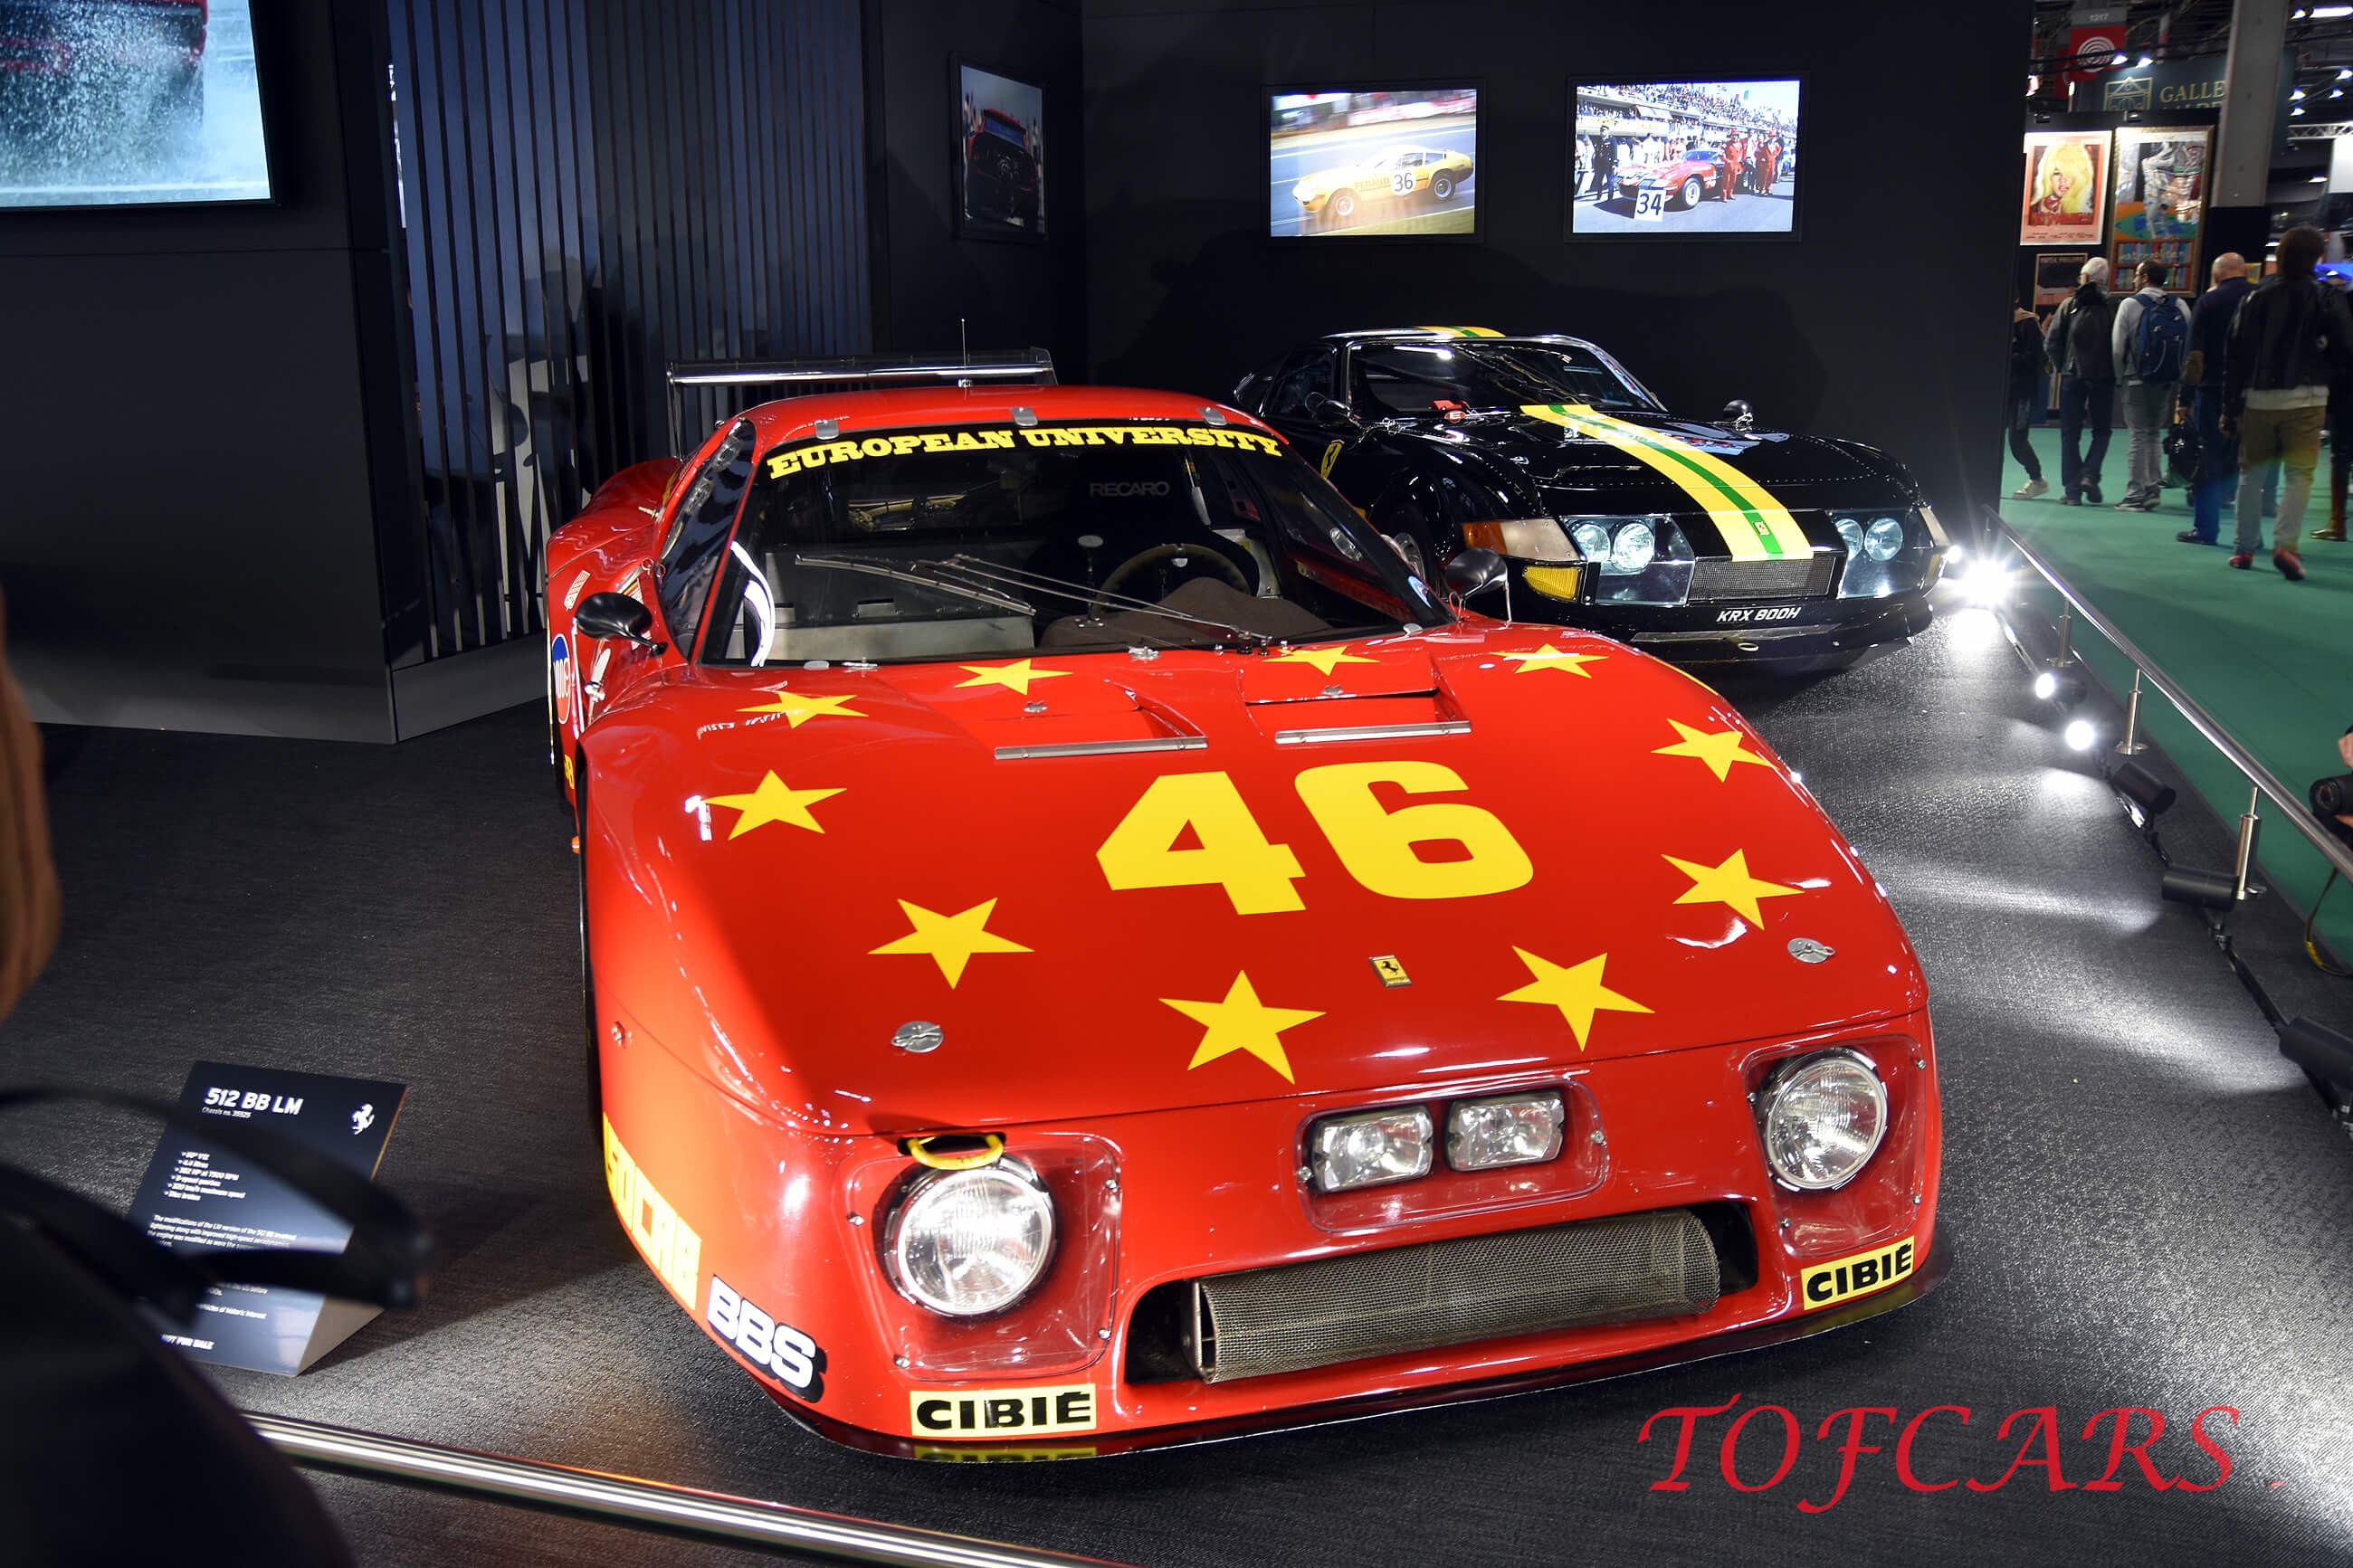 Ferrari 512bb lm 2 